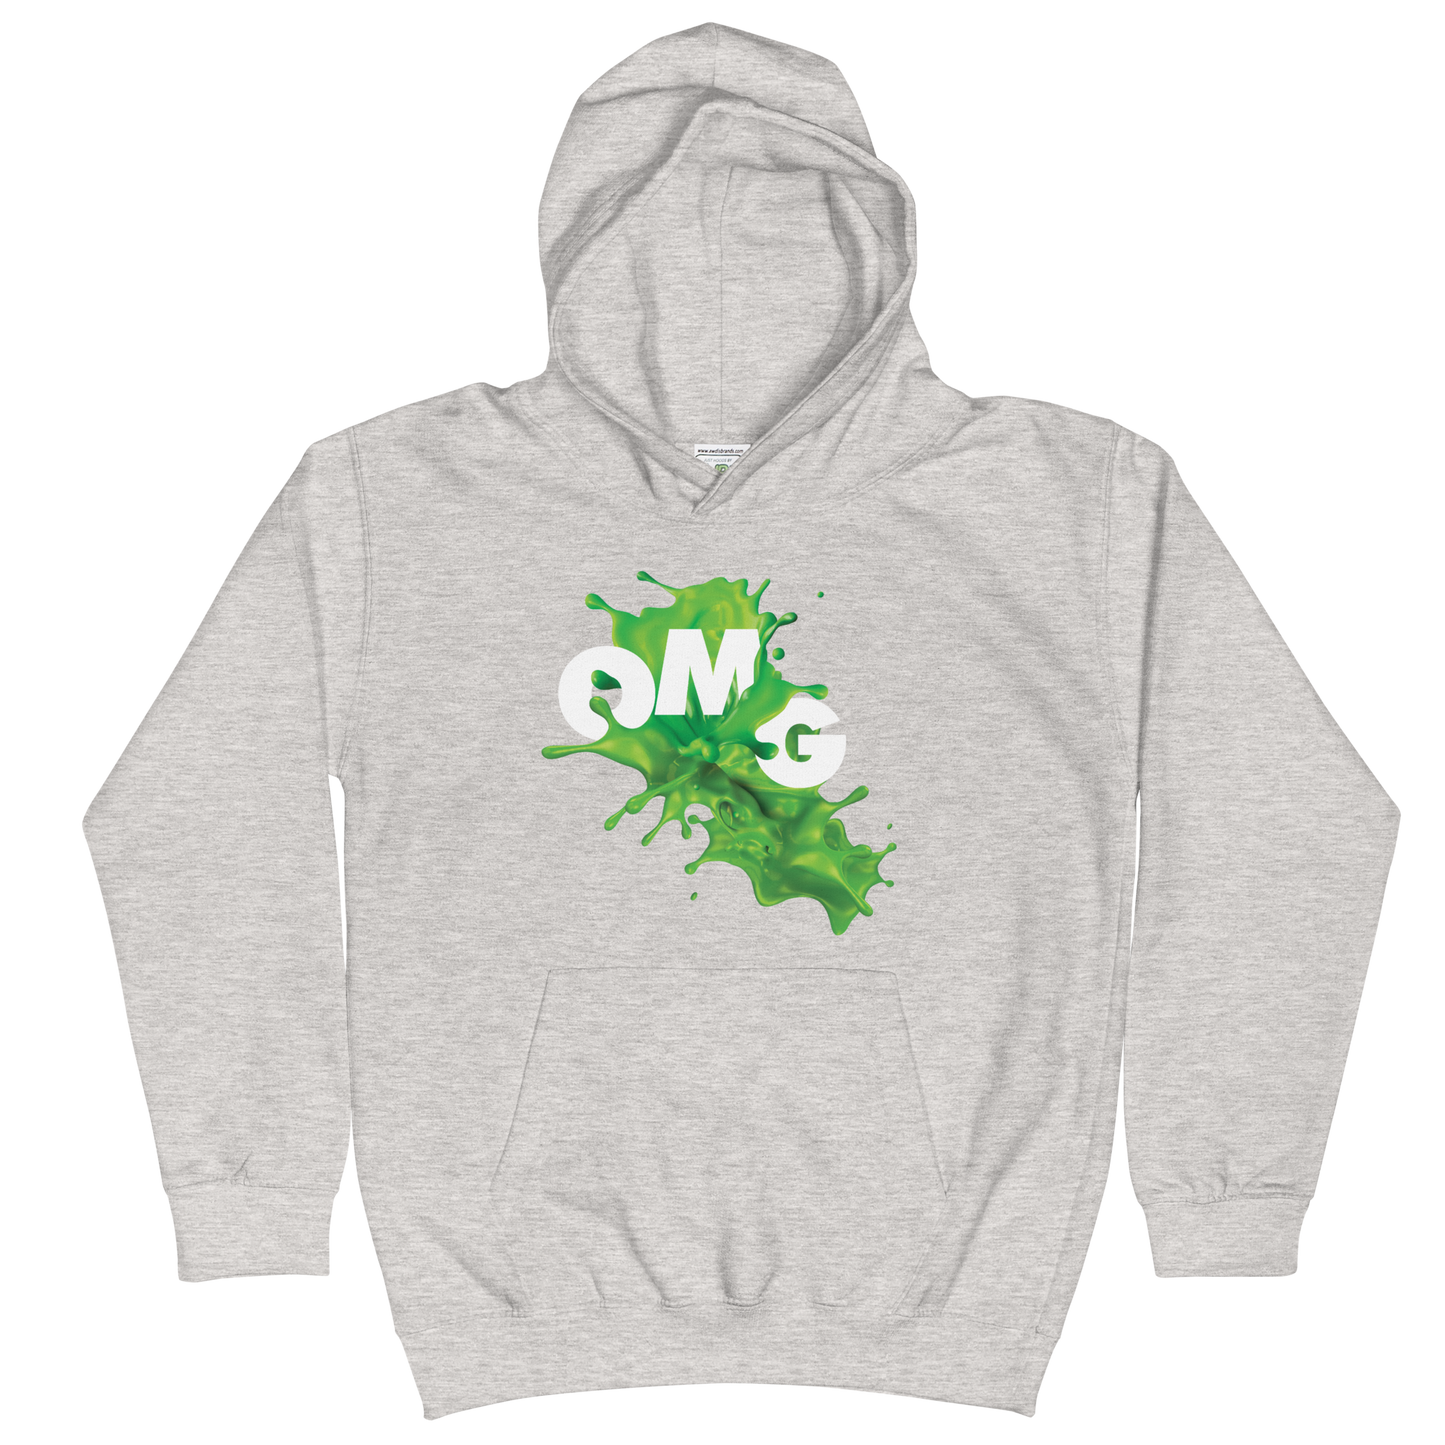 Slime OMG Kids Hooded Sweatshirt